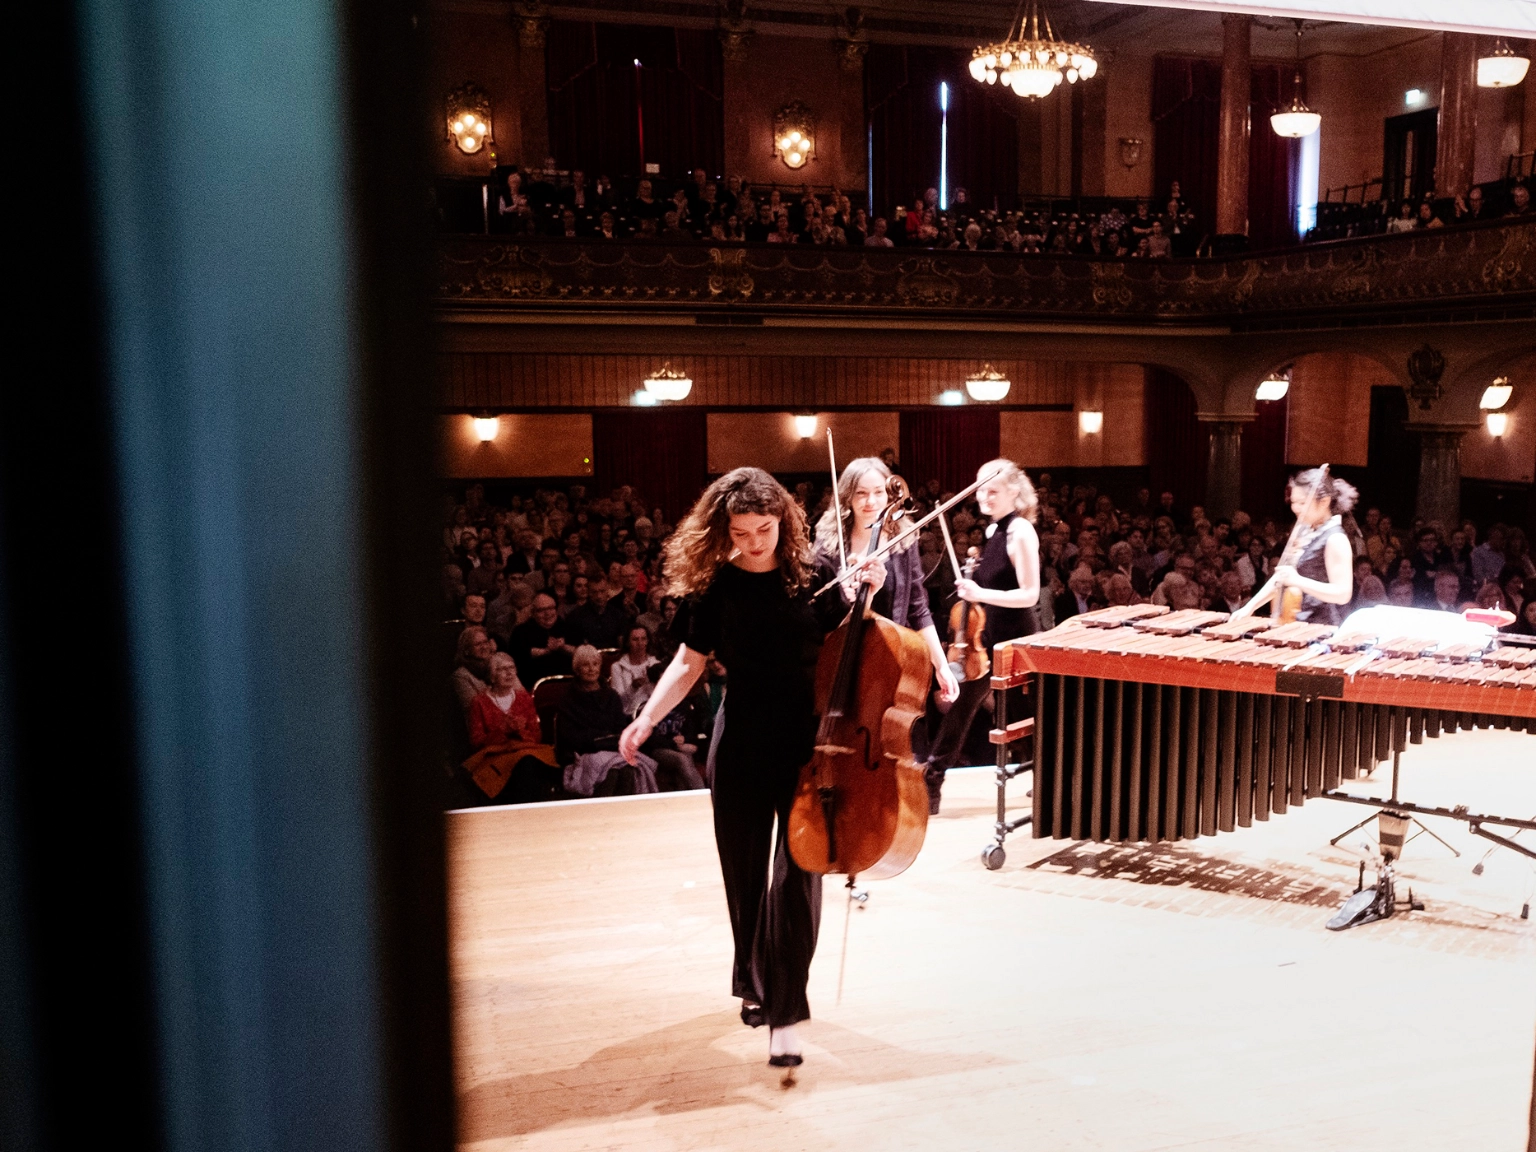 Impression vom Heidelberger Frühling – Foto aus dem Backstagebereich auf die Bühne. Vier Musiker*innen verlassen mit ihren Instrumente gerade die Bühne.